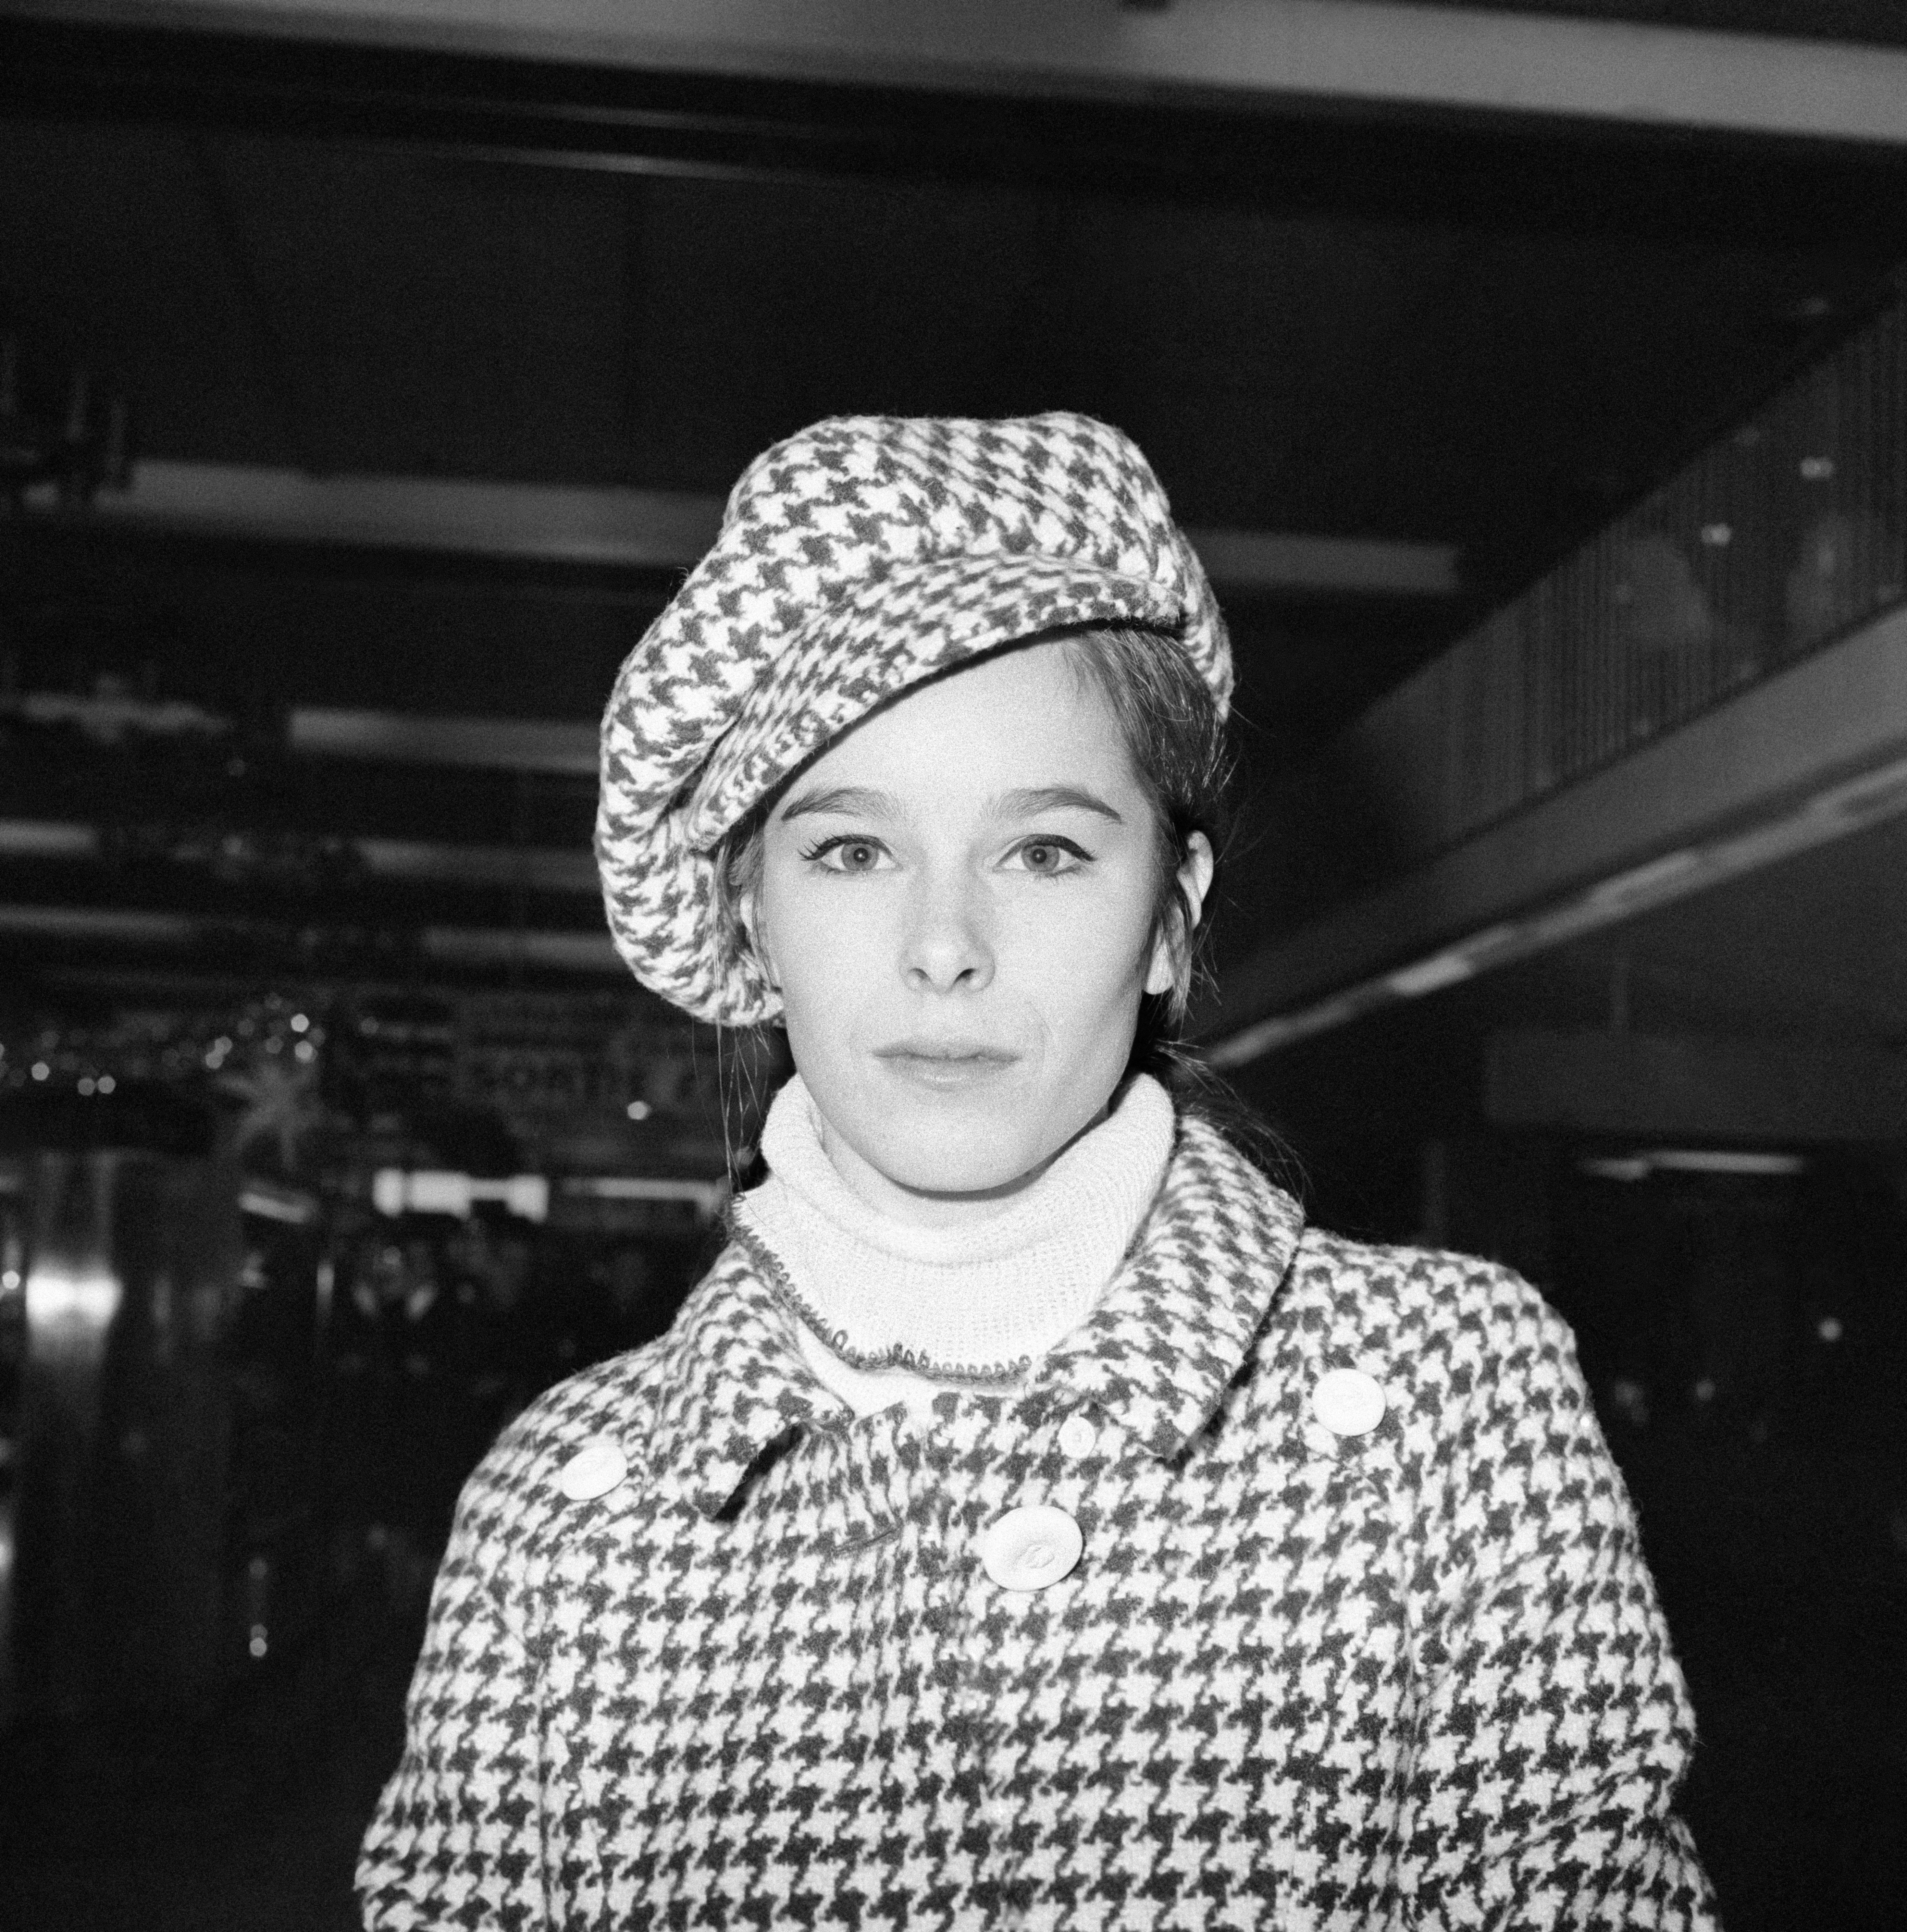 Géraldine Chaplin à l'aéroport d'Orly le 8 décembre 1965 à Orly, France. | Source : Getty Images